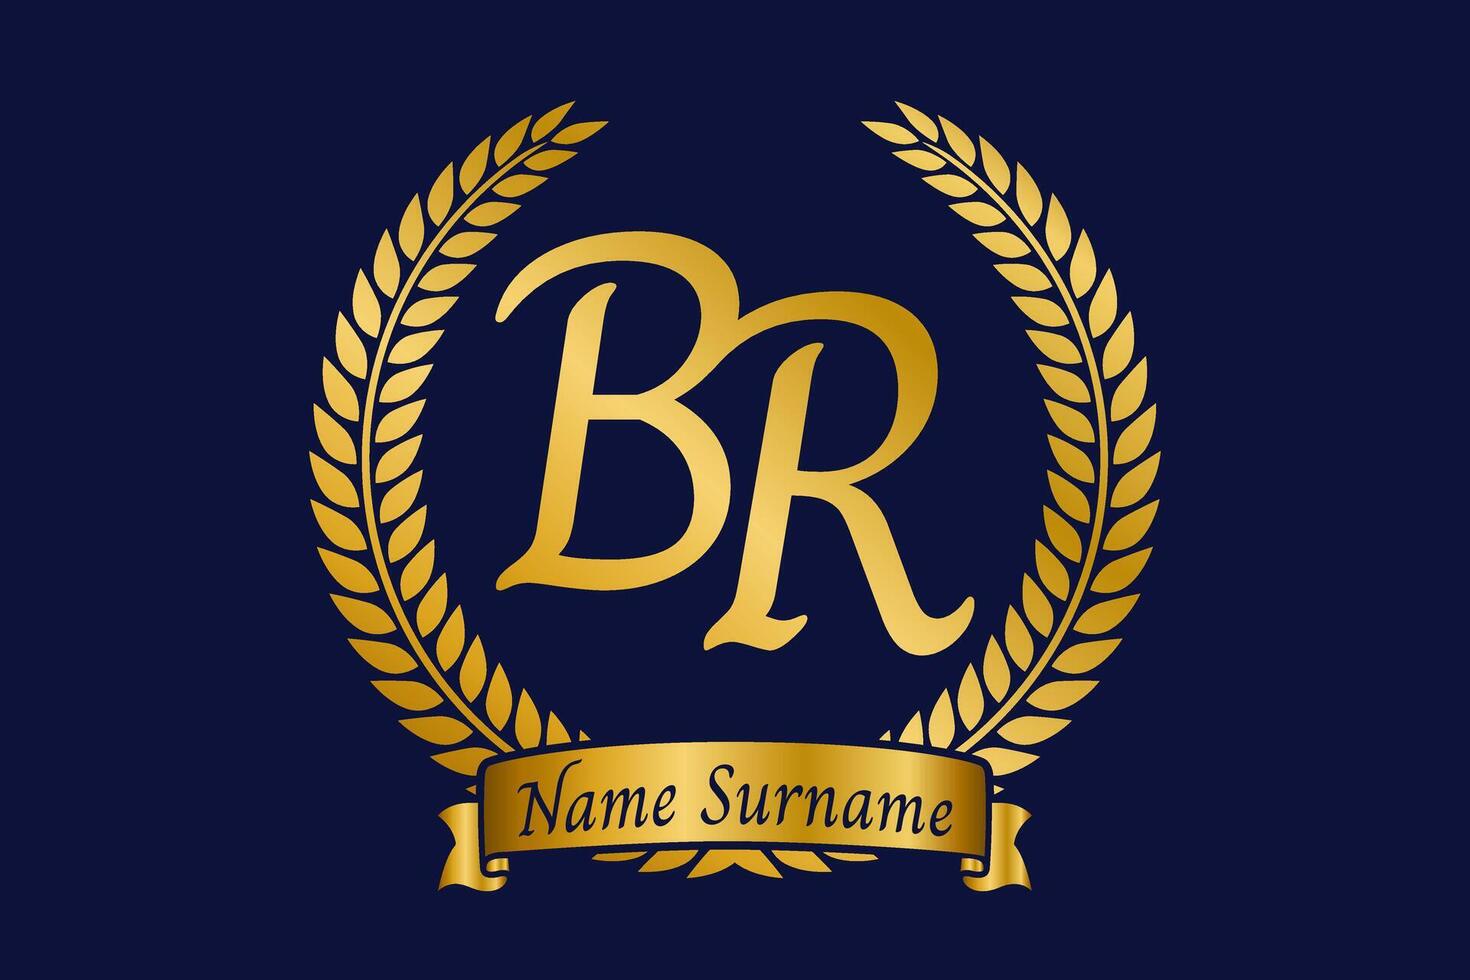 eerste brief b en r, br monogram logo ontwerp met laurier lauwerkrans. luxe gouden schoonschrift lettertype. vector